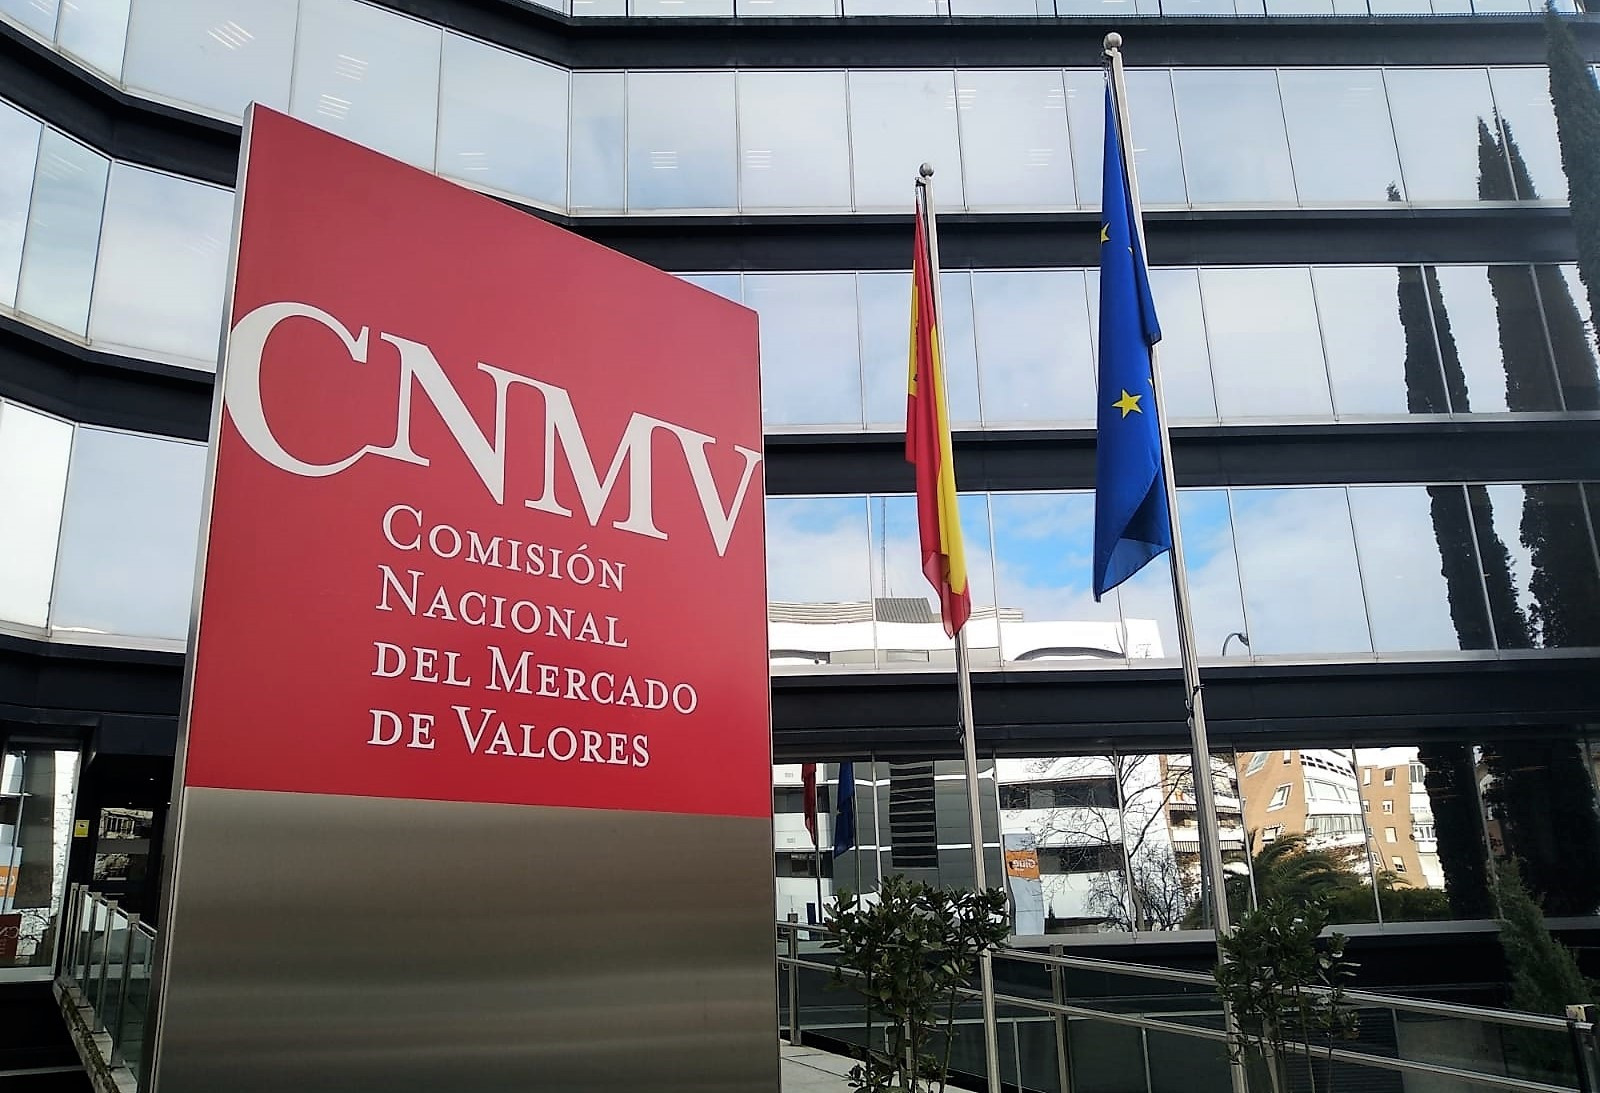 La CNMV mette in guardia contro 21 syringuidos finanziari in Italia, Lussemburgo, Regno Unito, Irlanda, Grecia e Germania.